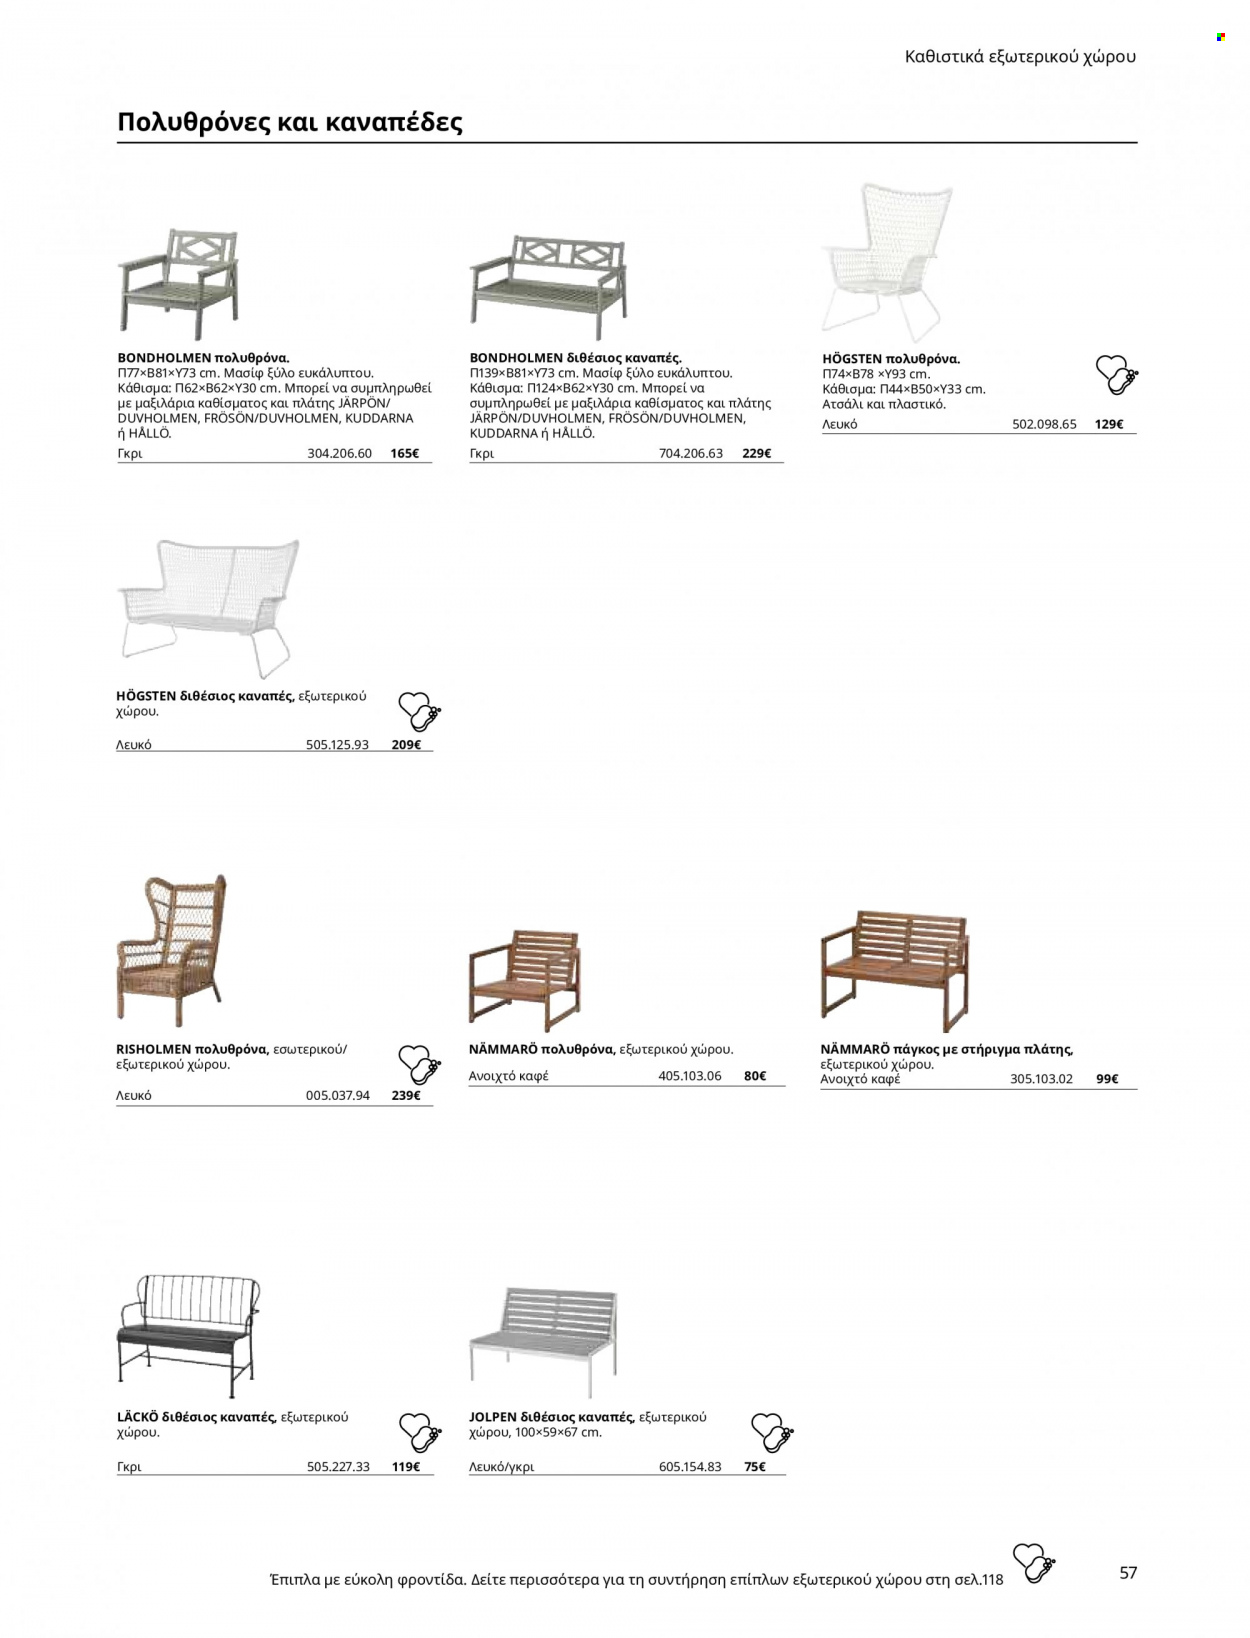 Φυλλάδιο IKEA. Σελίδα 57.